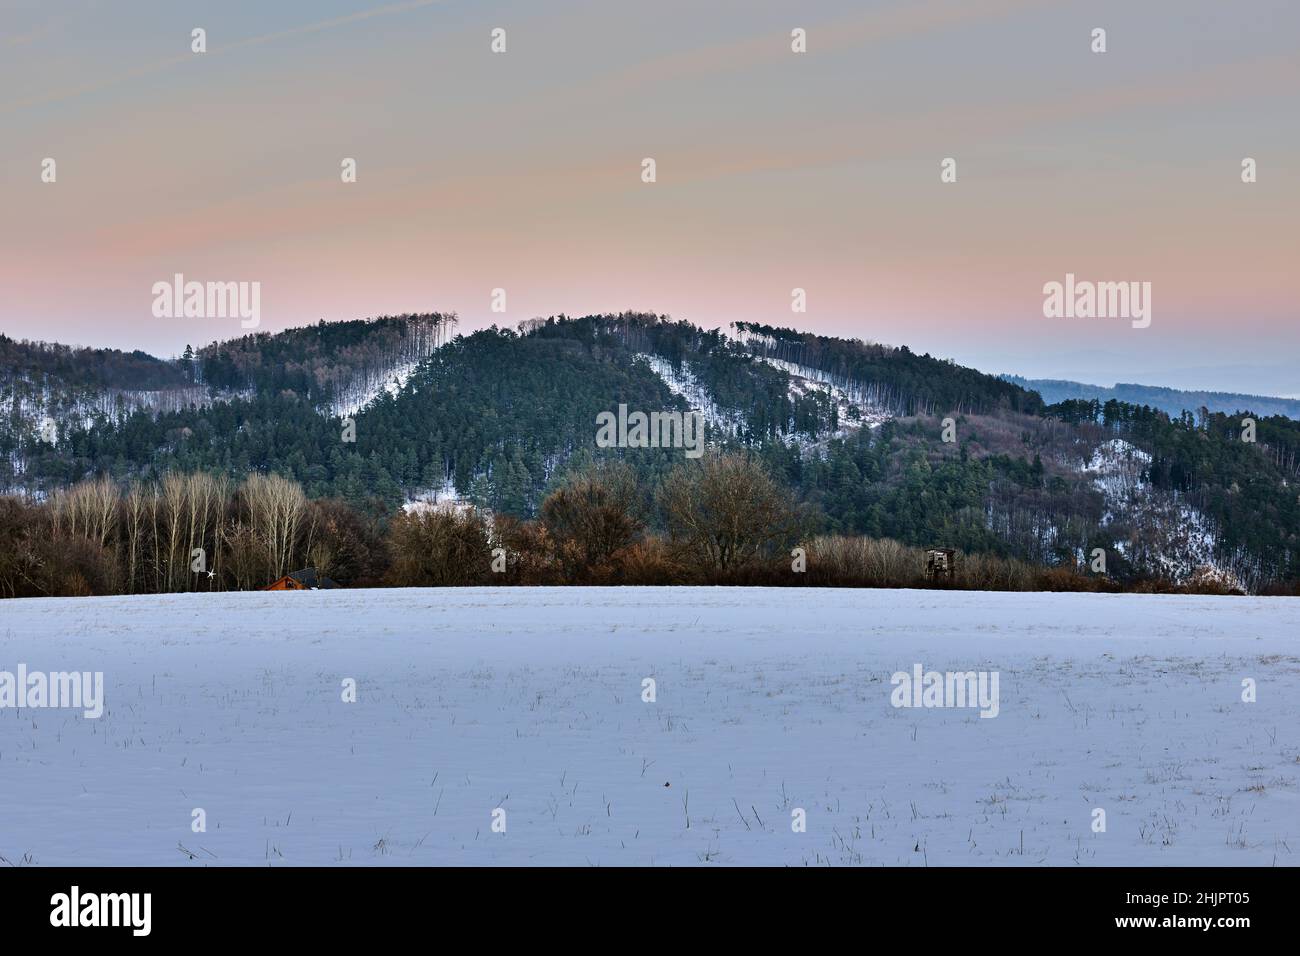 Berglandschaft im Winter mit Hügeln und Nadelbäumen in der Abenddämmerung. Kurz nach Sonnenuntergang. Farbenfroher Himmel. Mit hohem Standfuß. Vrsatec, Slowakei. Stockfoto